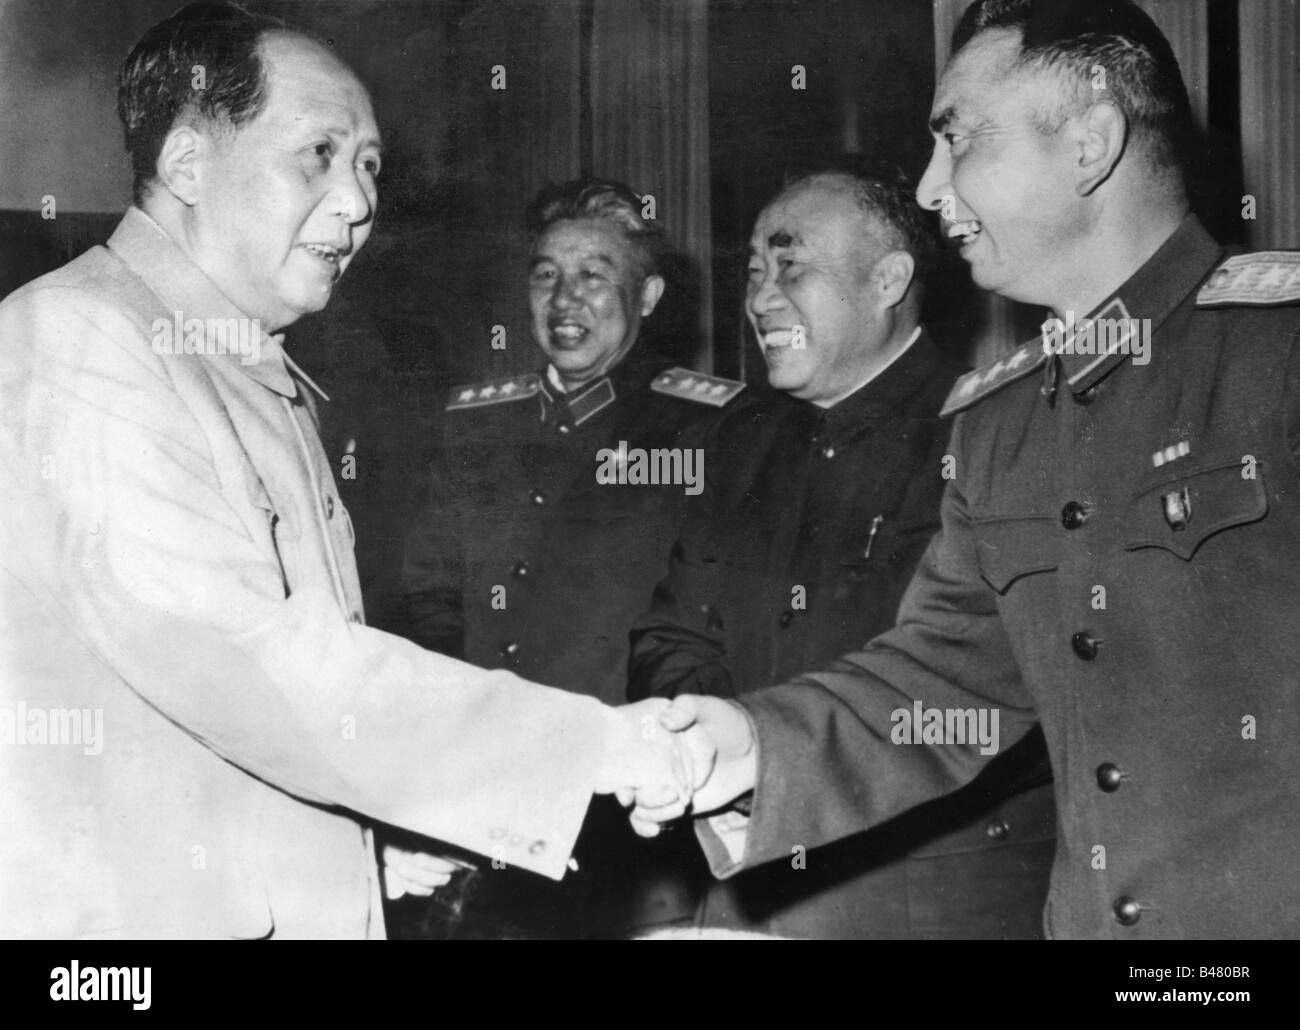 MAO Zedong, 26.12.1893 - 9.9.1976, politico cinese, Presidente della Repubblica popolare cinese 1.10.1949 - 9.9.1976, con una delegazione dell'Esercito di liberazione dei popoli, Pechino, 5.11.1958, Comandante supremo generale Yang Yung, Foto Stock